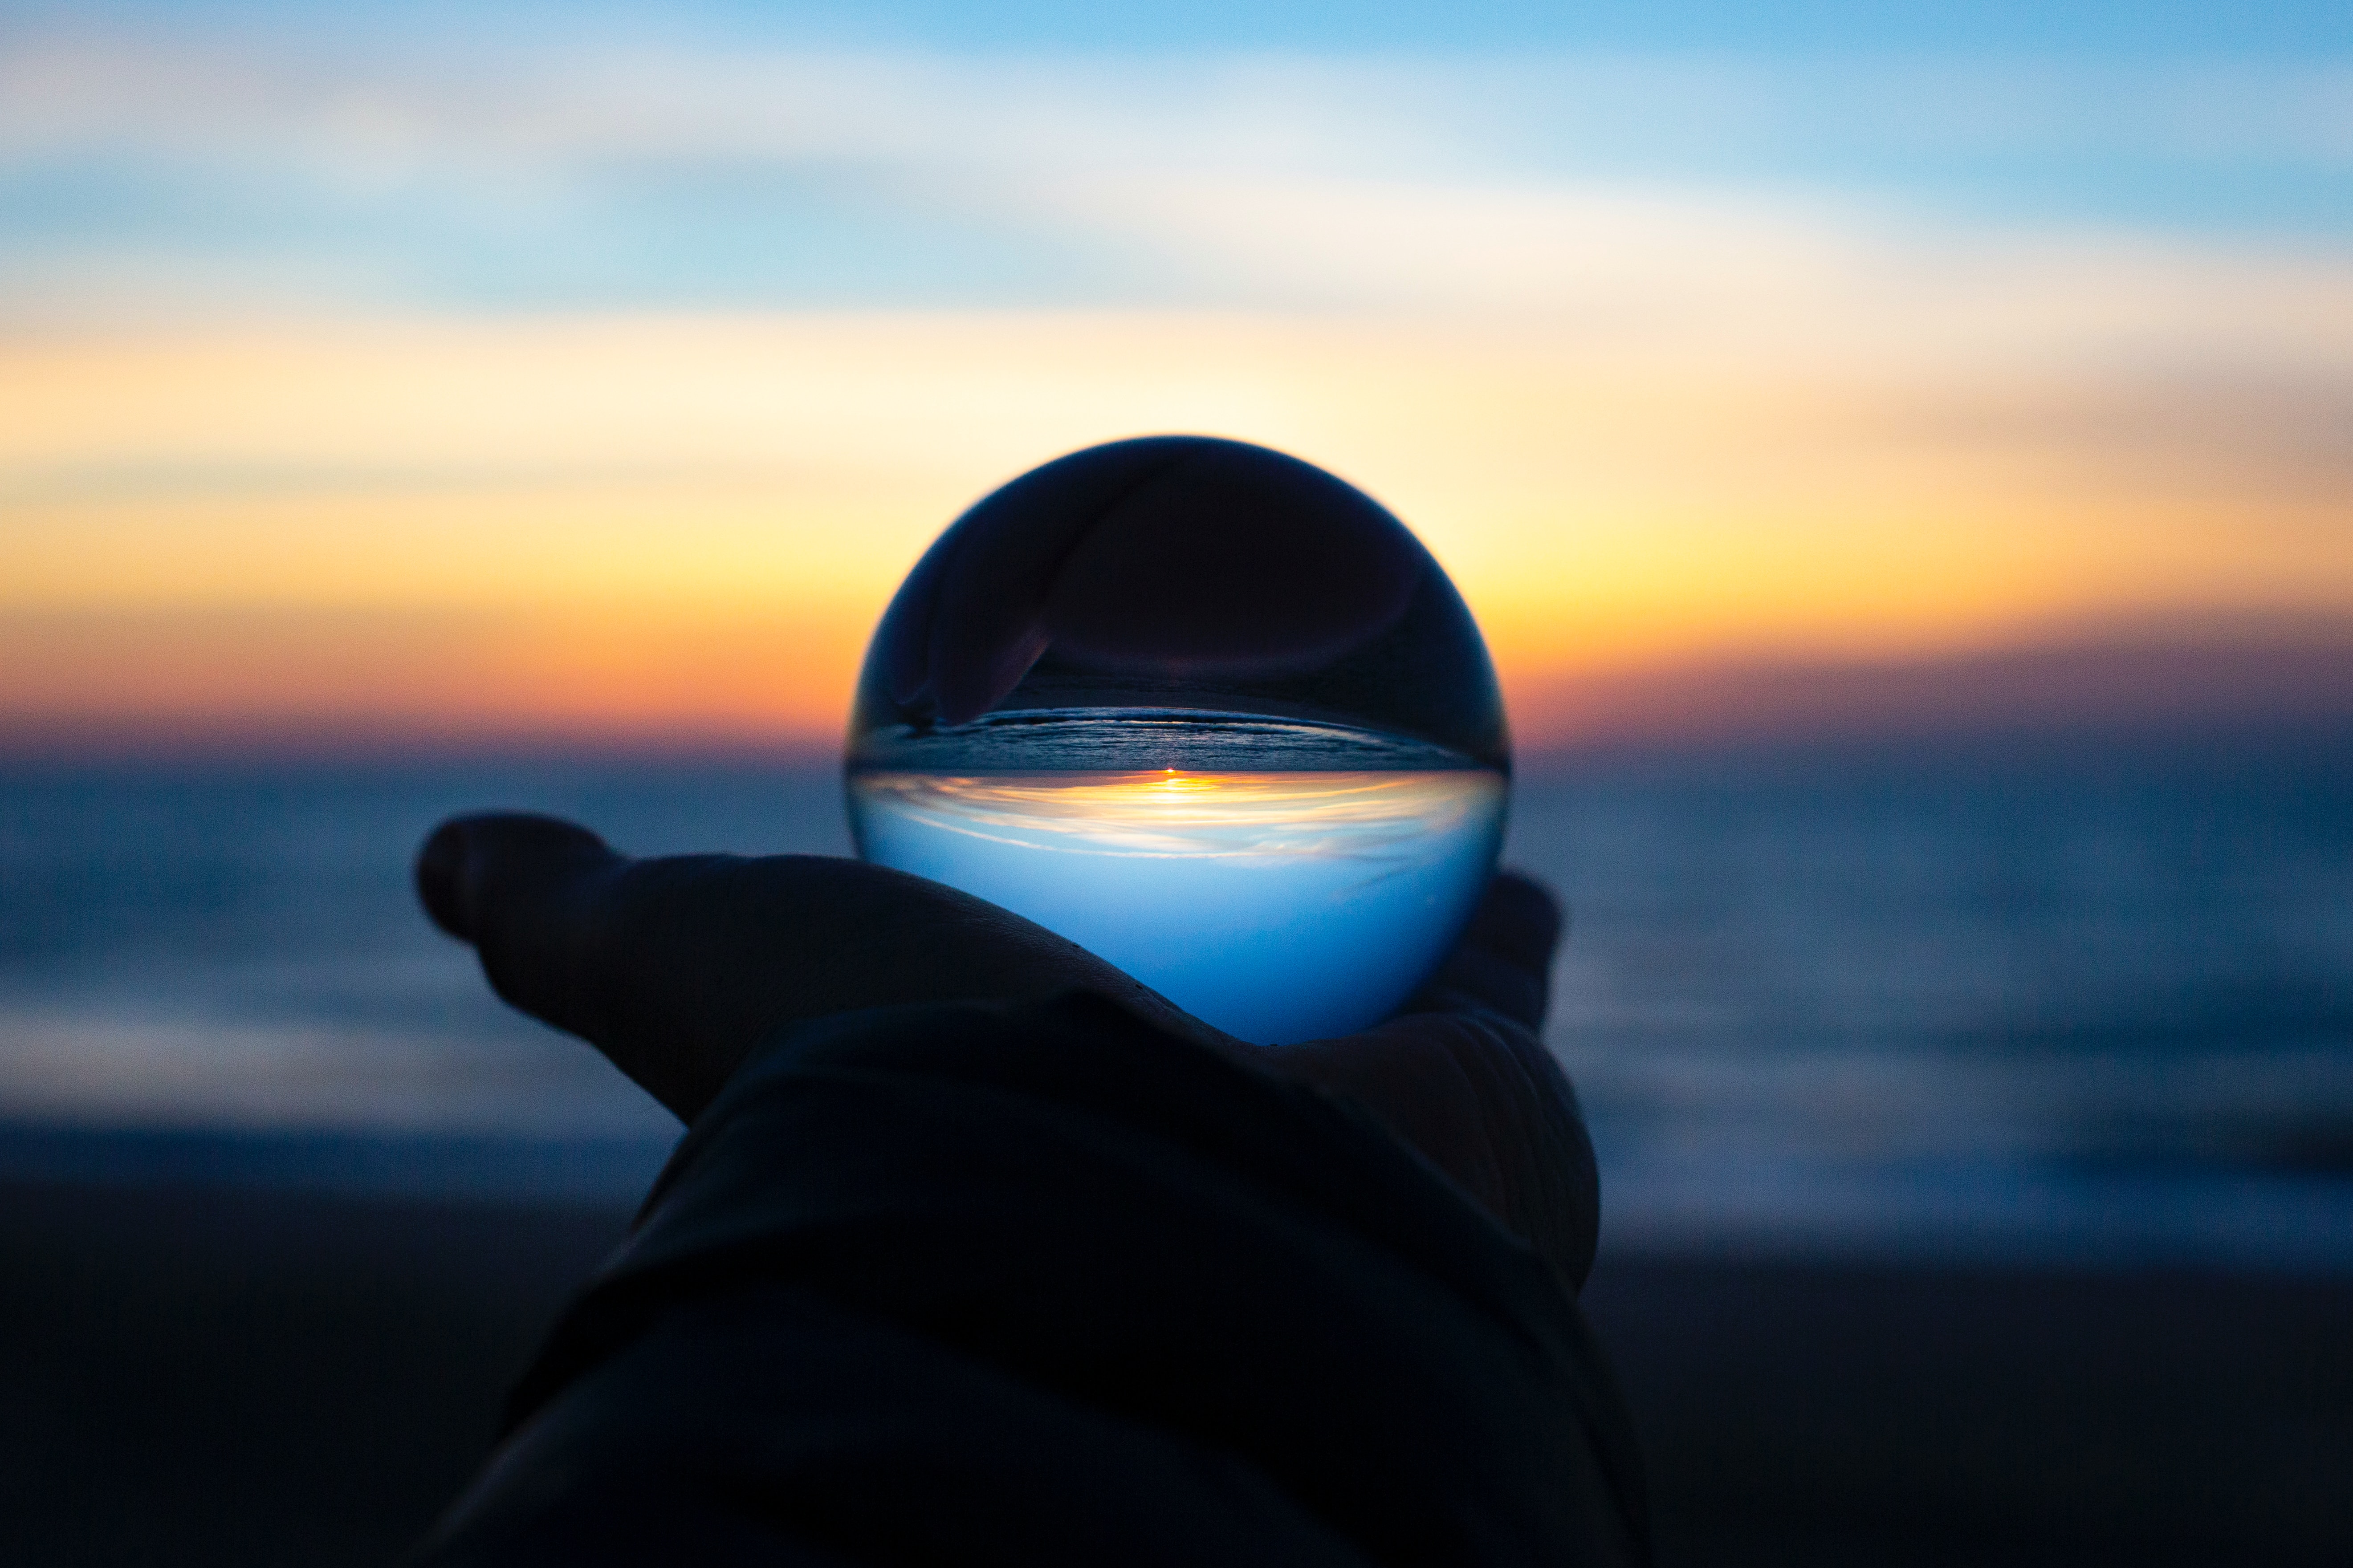 Glaskugel im Hand mit dem Meer beim Sonnenuntergang im Hintergrund